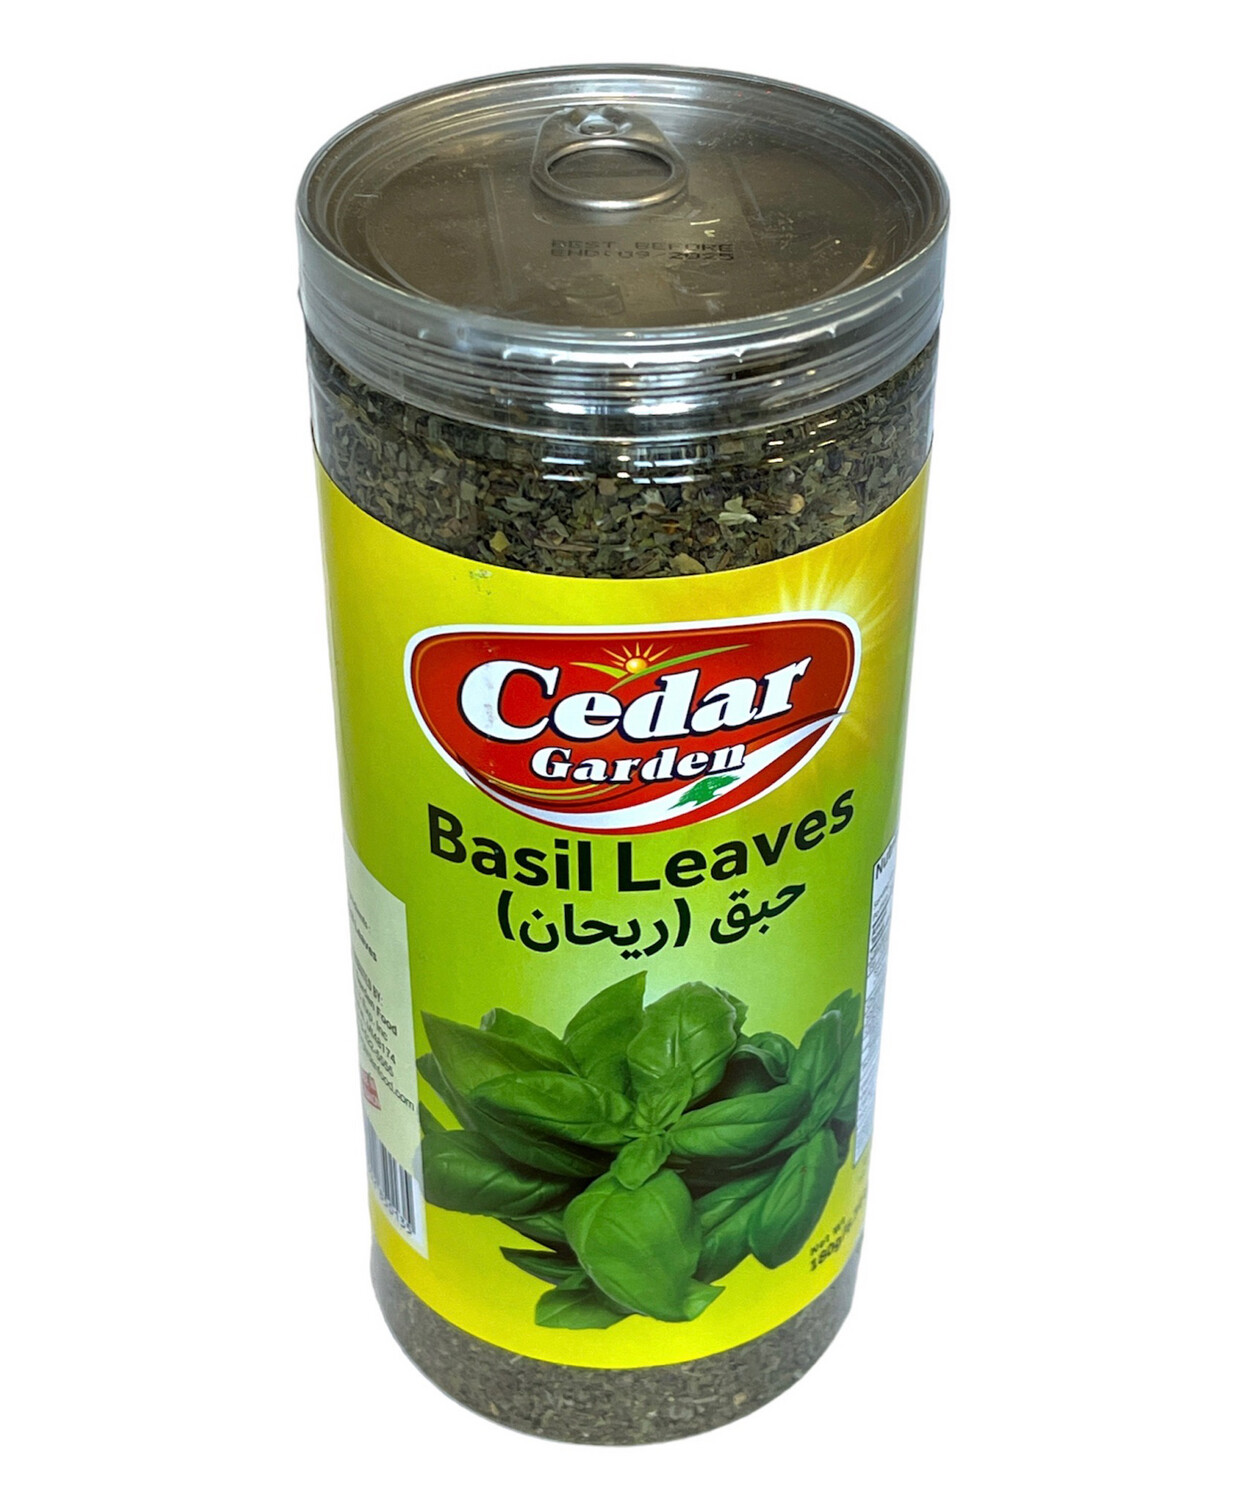 Cedar Garden Basil Leaves 12x180g